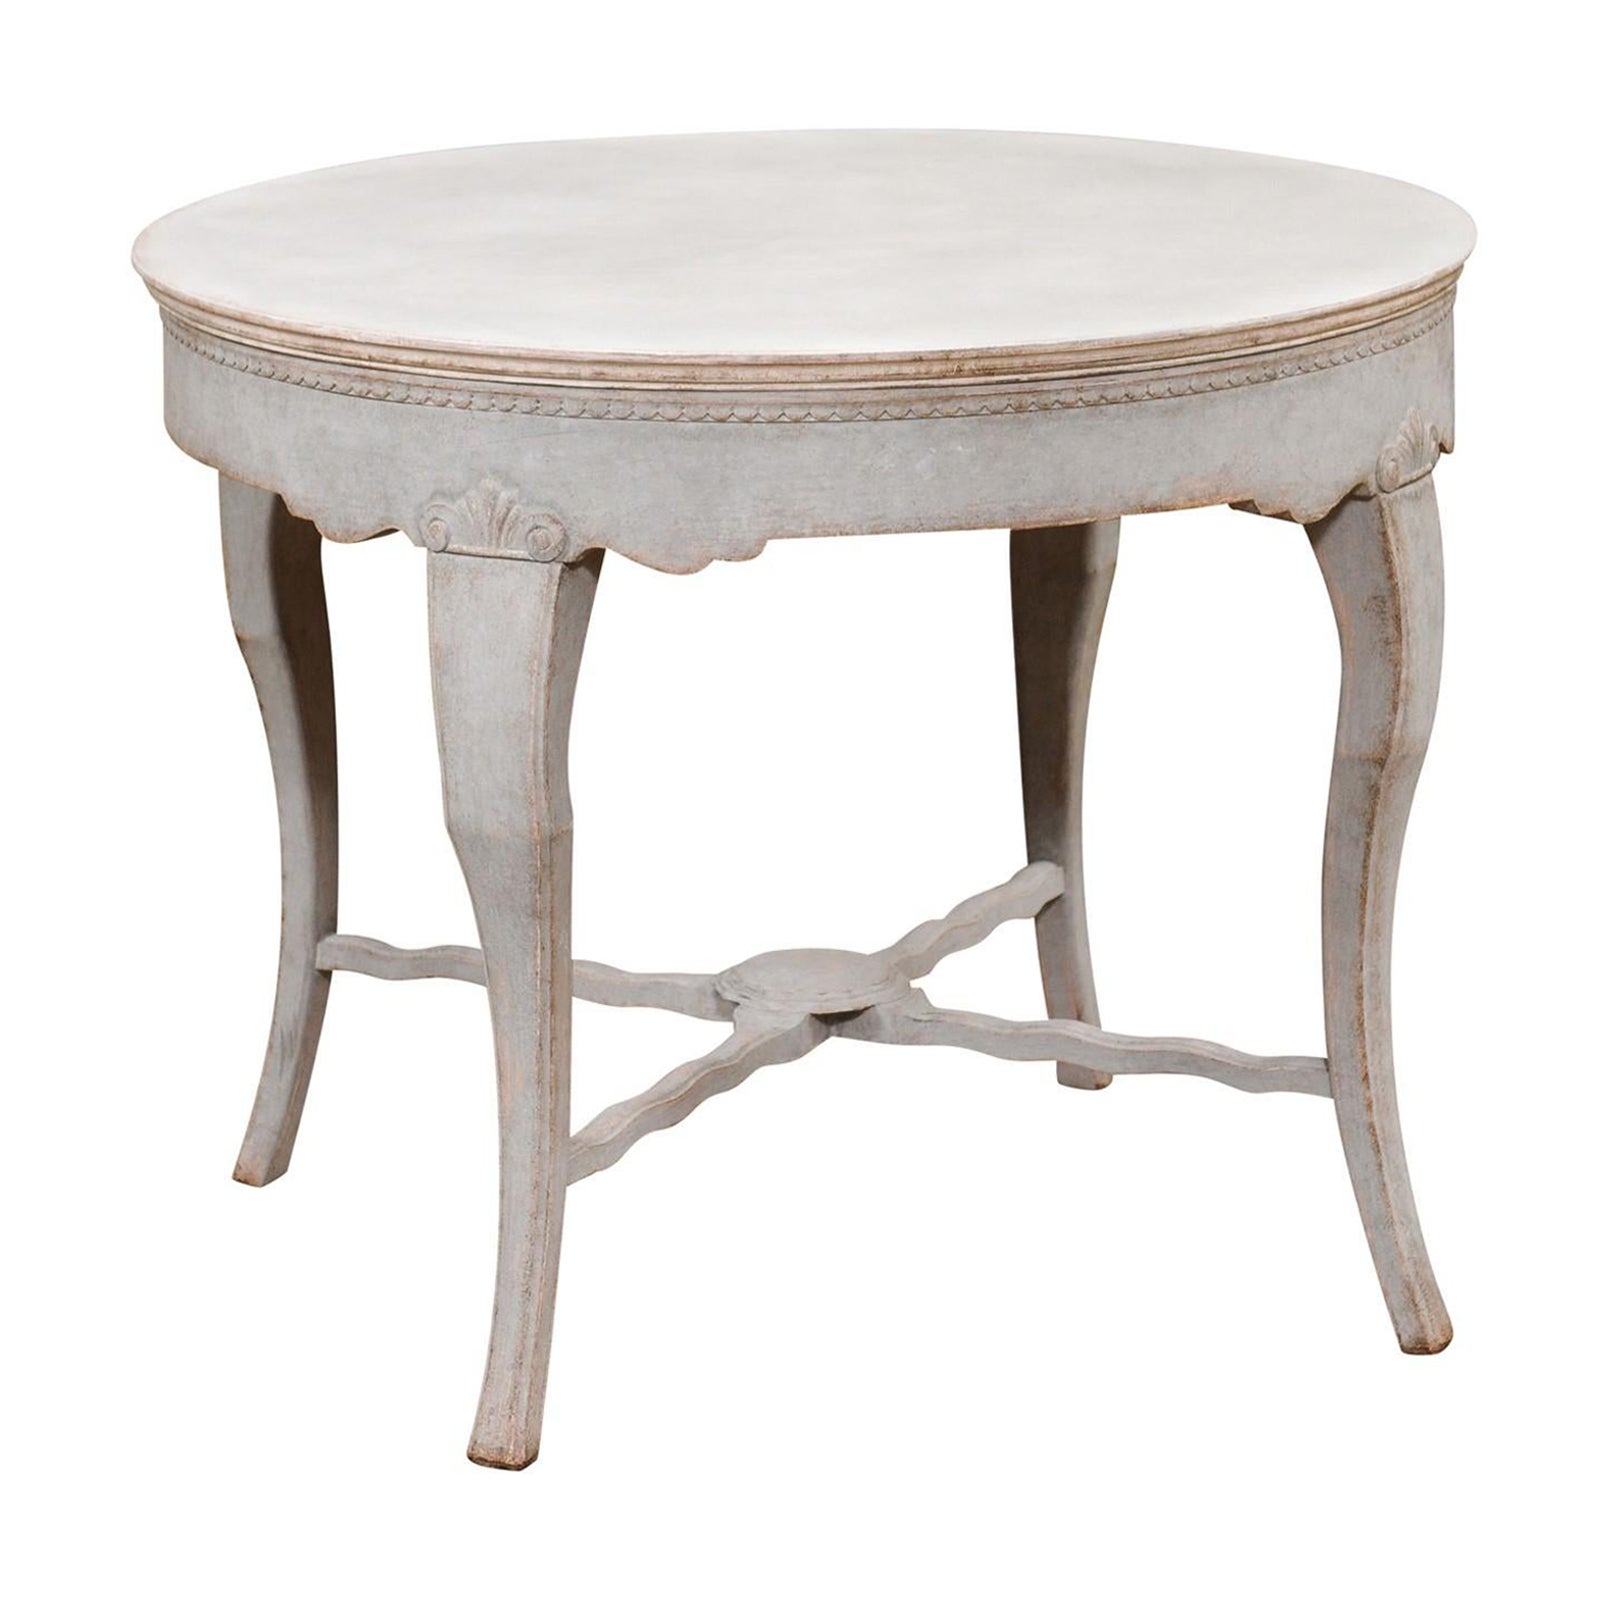 Schwedischer Tisch mit runder Platte aus dem 19. Jahrhundert, geschnitzt mit Cabriole-Beinen und Stretcher